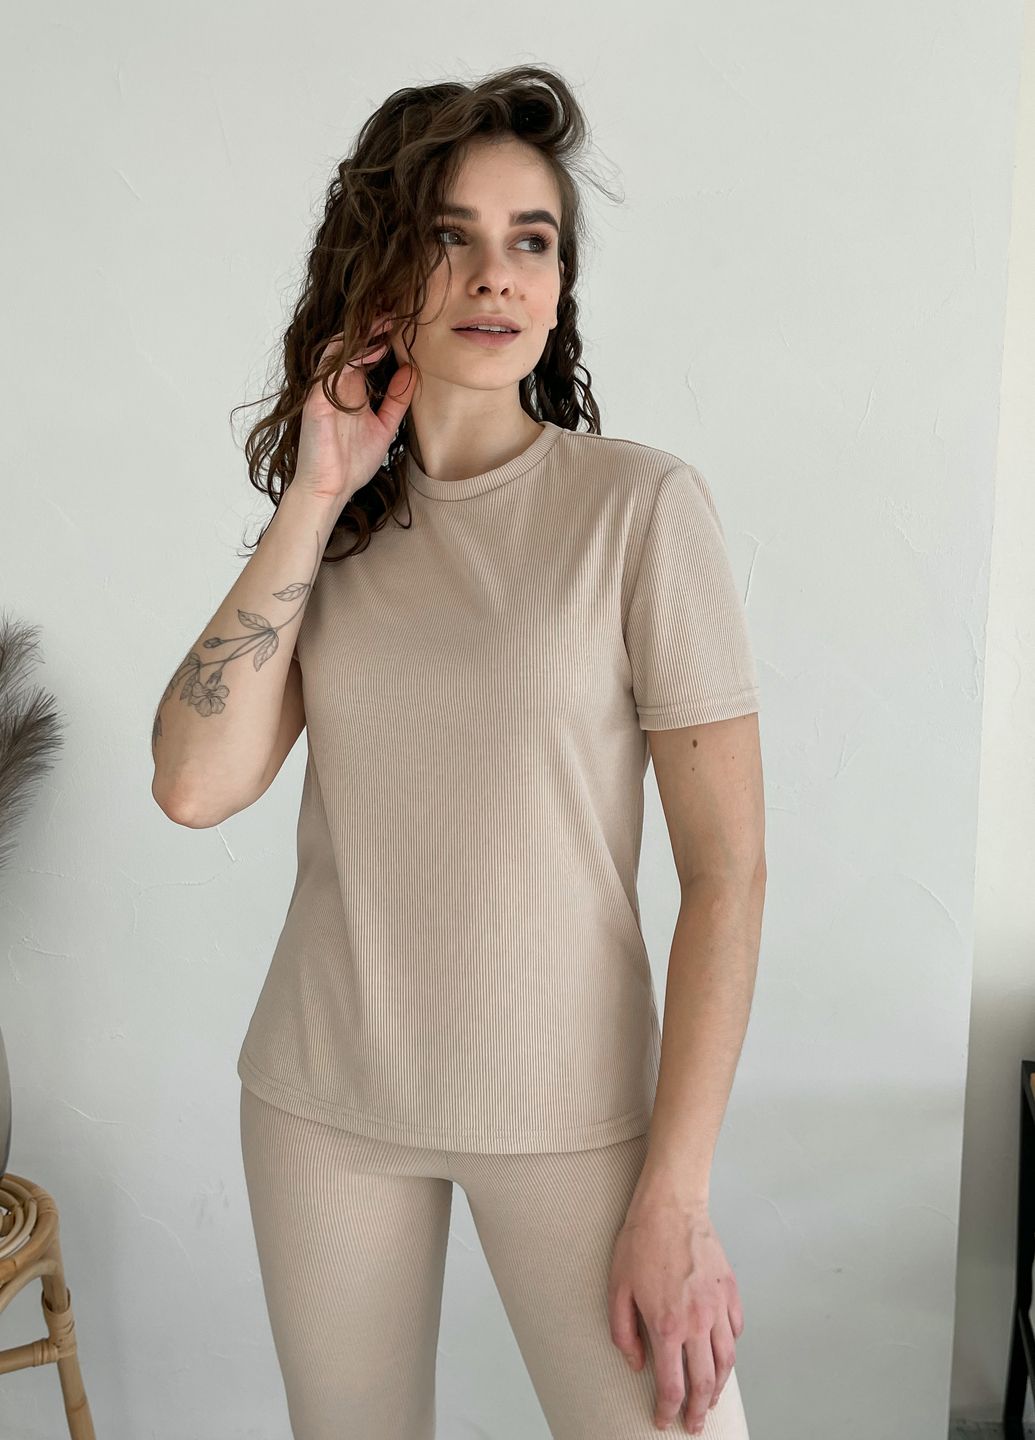 Купить Костюм женский в рубчик футболка с лосинами светло-бежевый Merlini Сантино 100000502, размер XS-M (40-44) в интернет-магазине